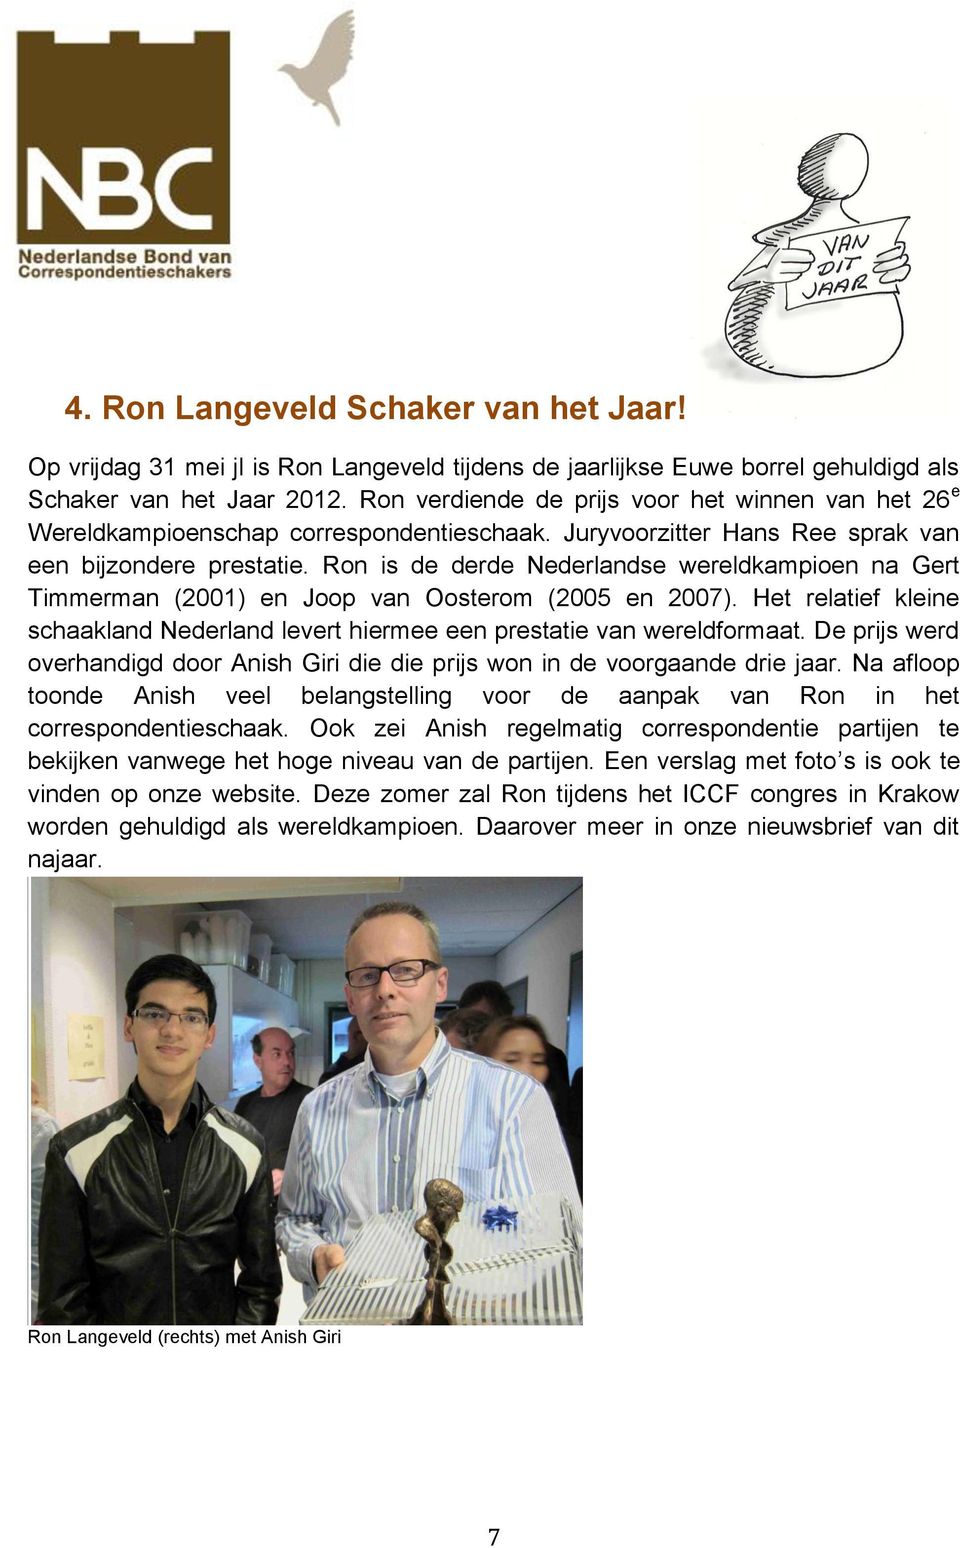 Ron is de derde Nederlandse wereldkampioen na Gert Timmerman (2001) en Joop van Oosterom (2005 en 2007). Het relatief kleine schaakland Nederland levert hiermee een prestatie van wereldformaat.